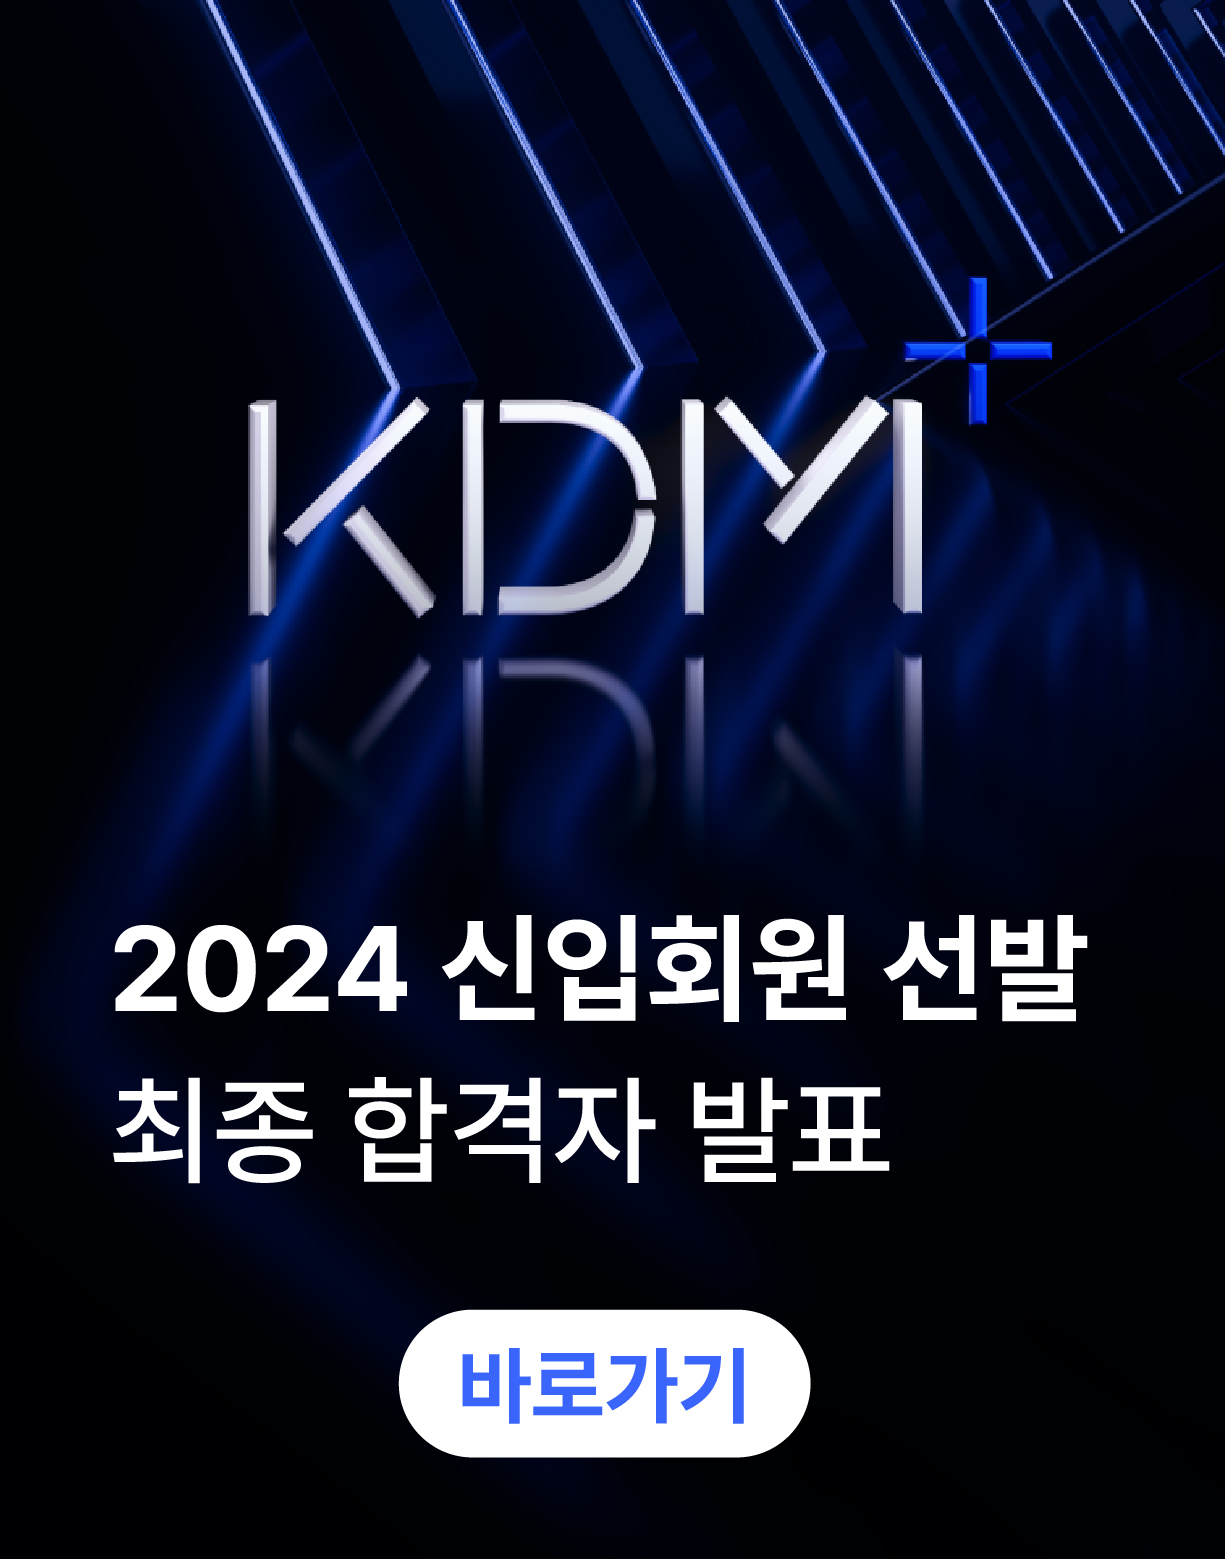 「2024 세계일류 디자이너 양성사업」 KDM+ 수혜학생 최종 선정 결과 공고